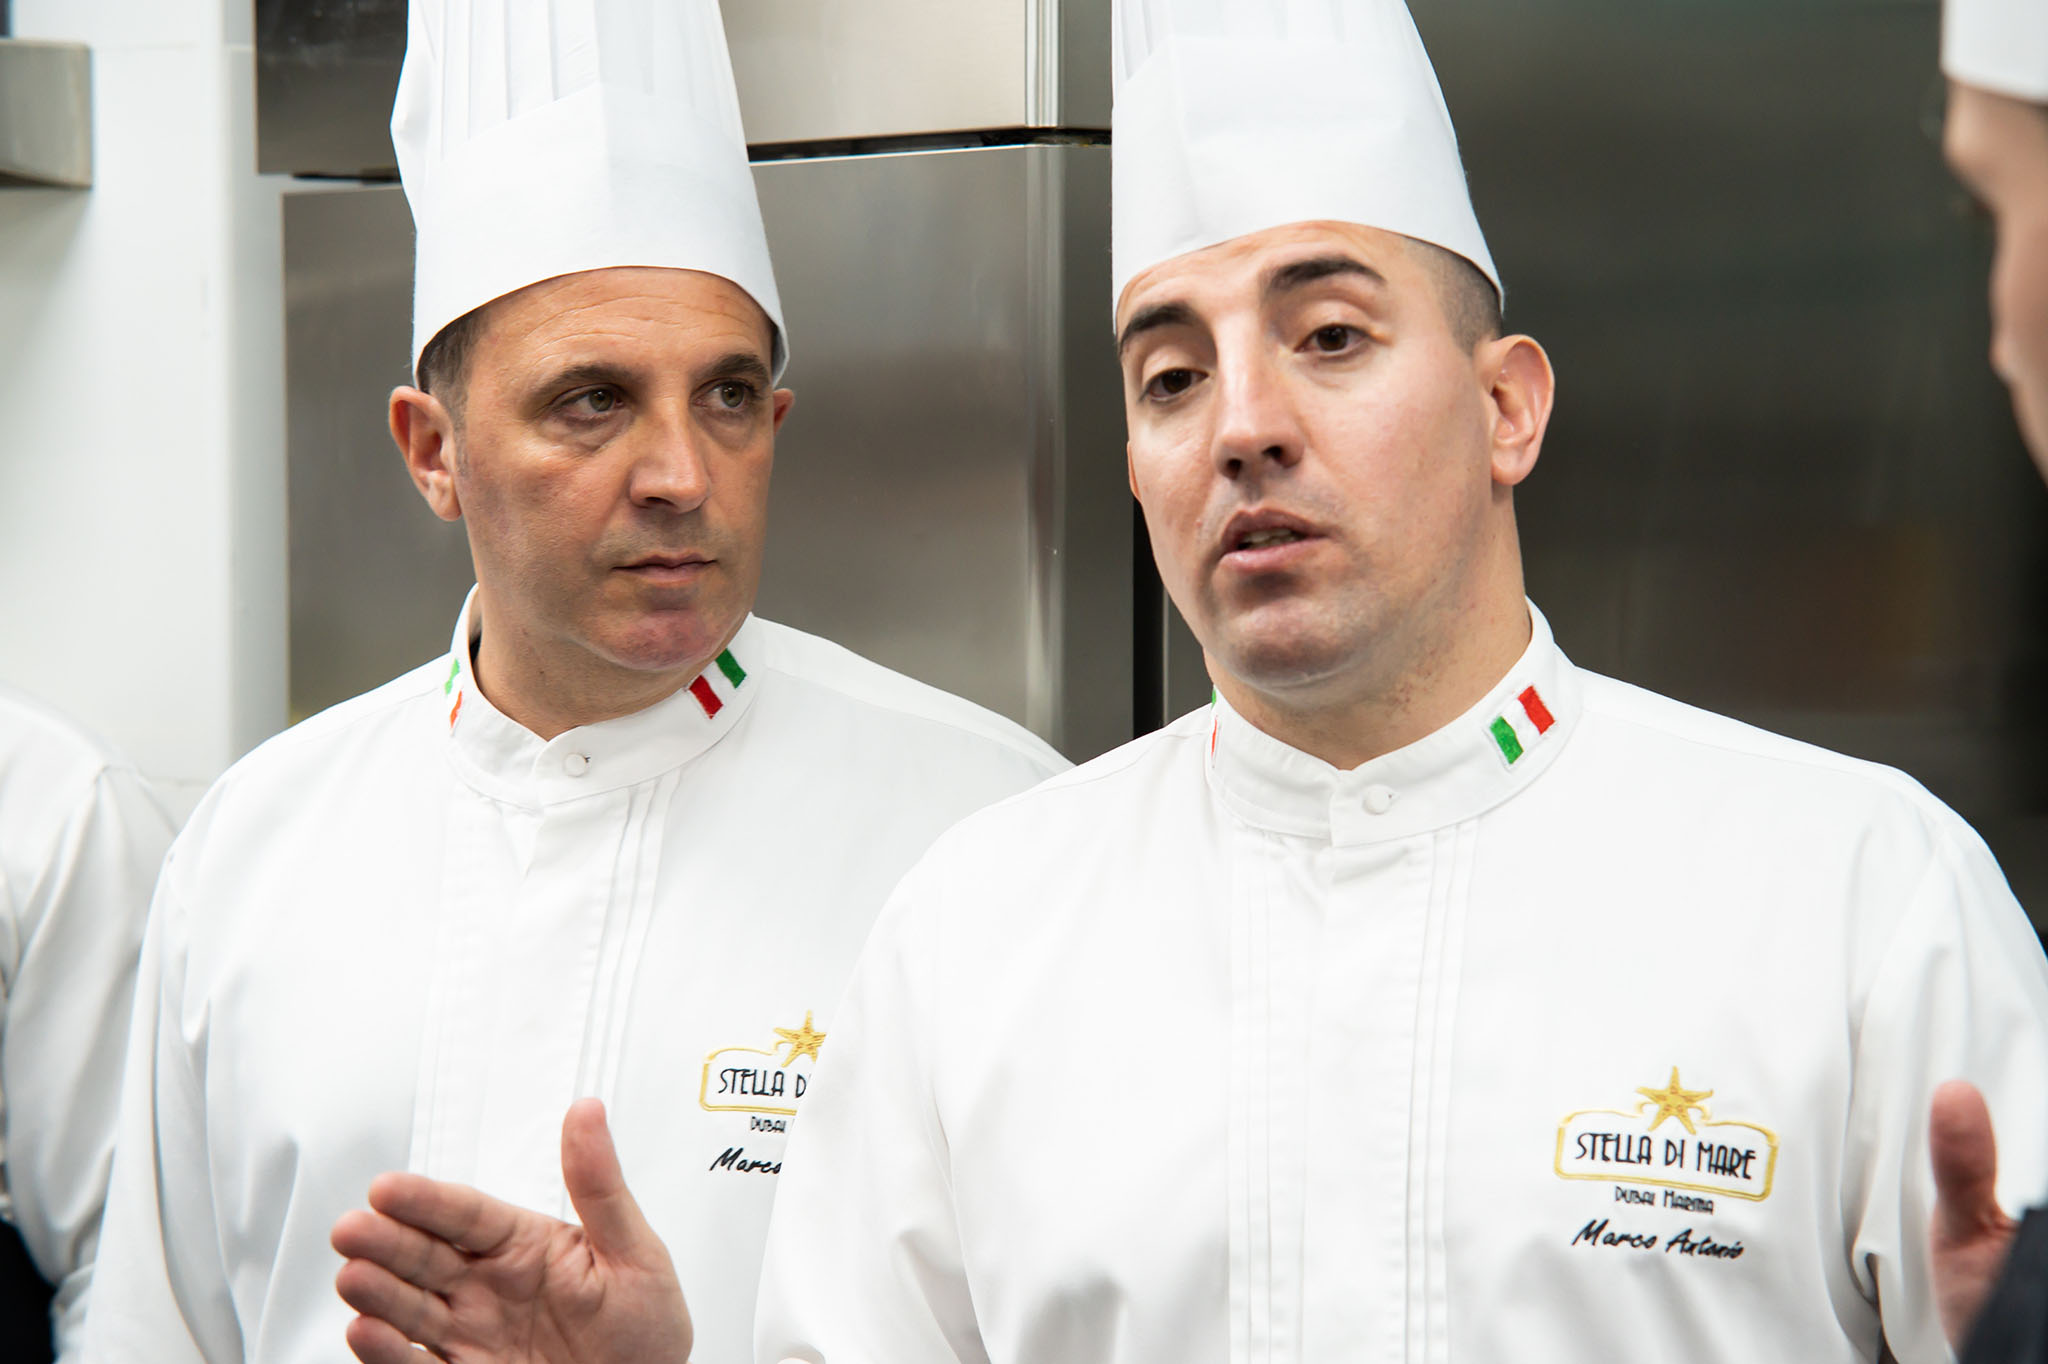 Marco Blanquer hablando con su equipo de cocina del restaurante Leonardo